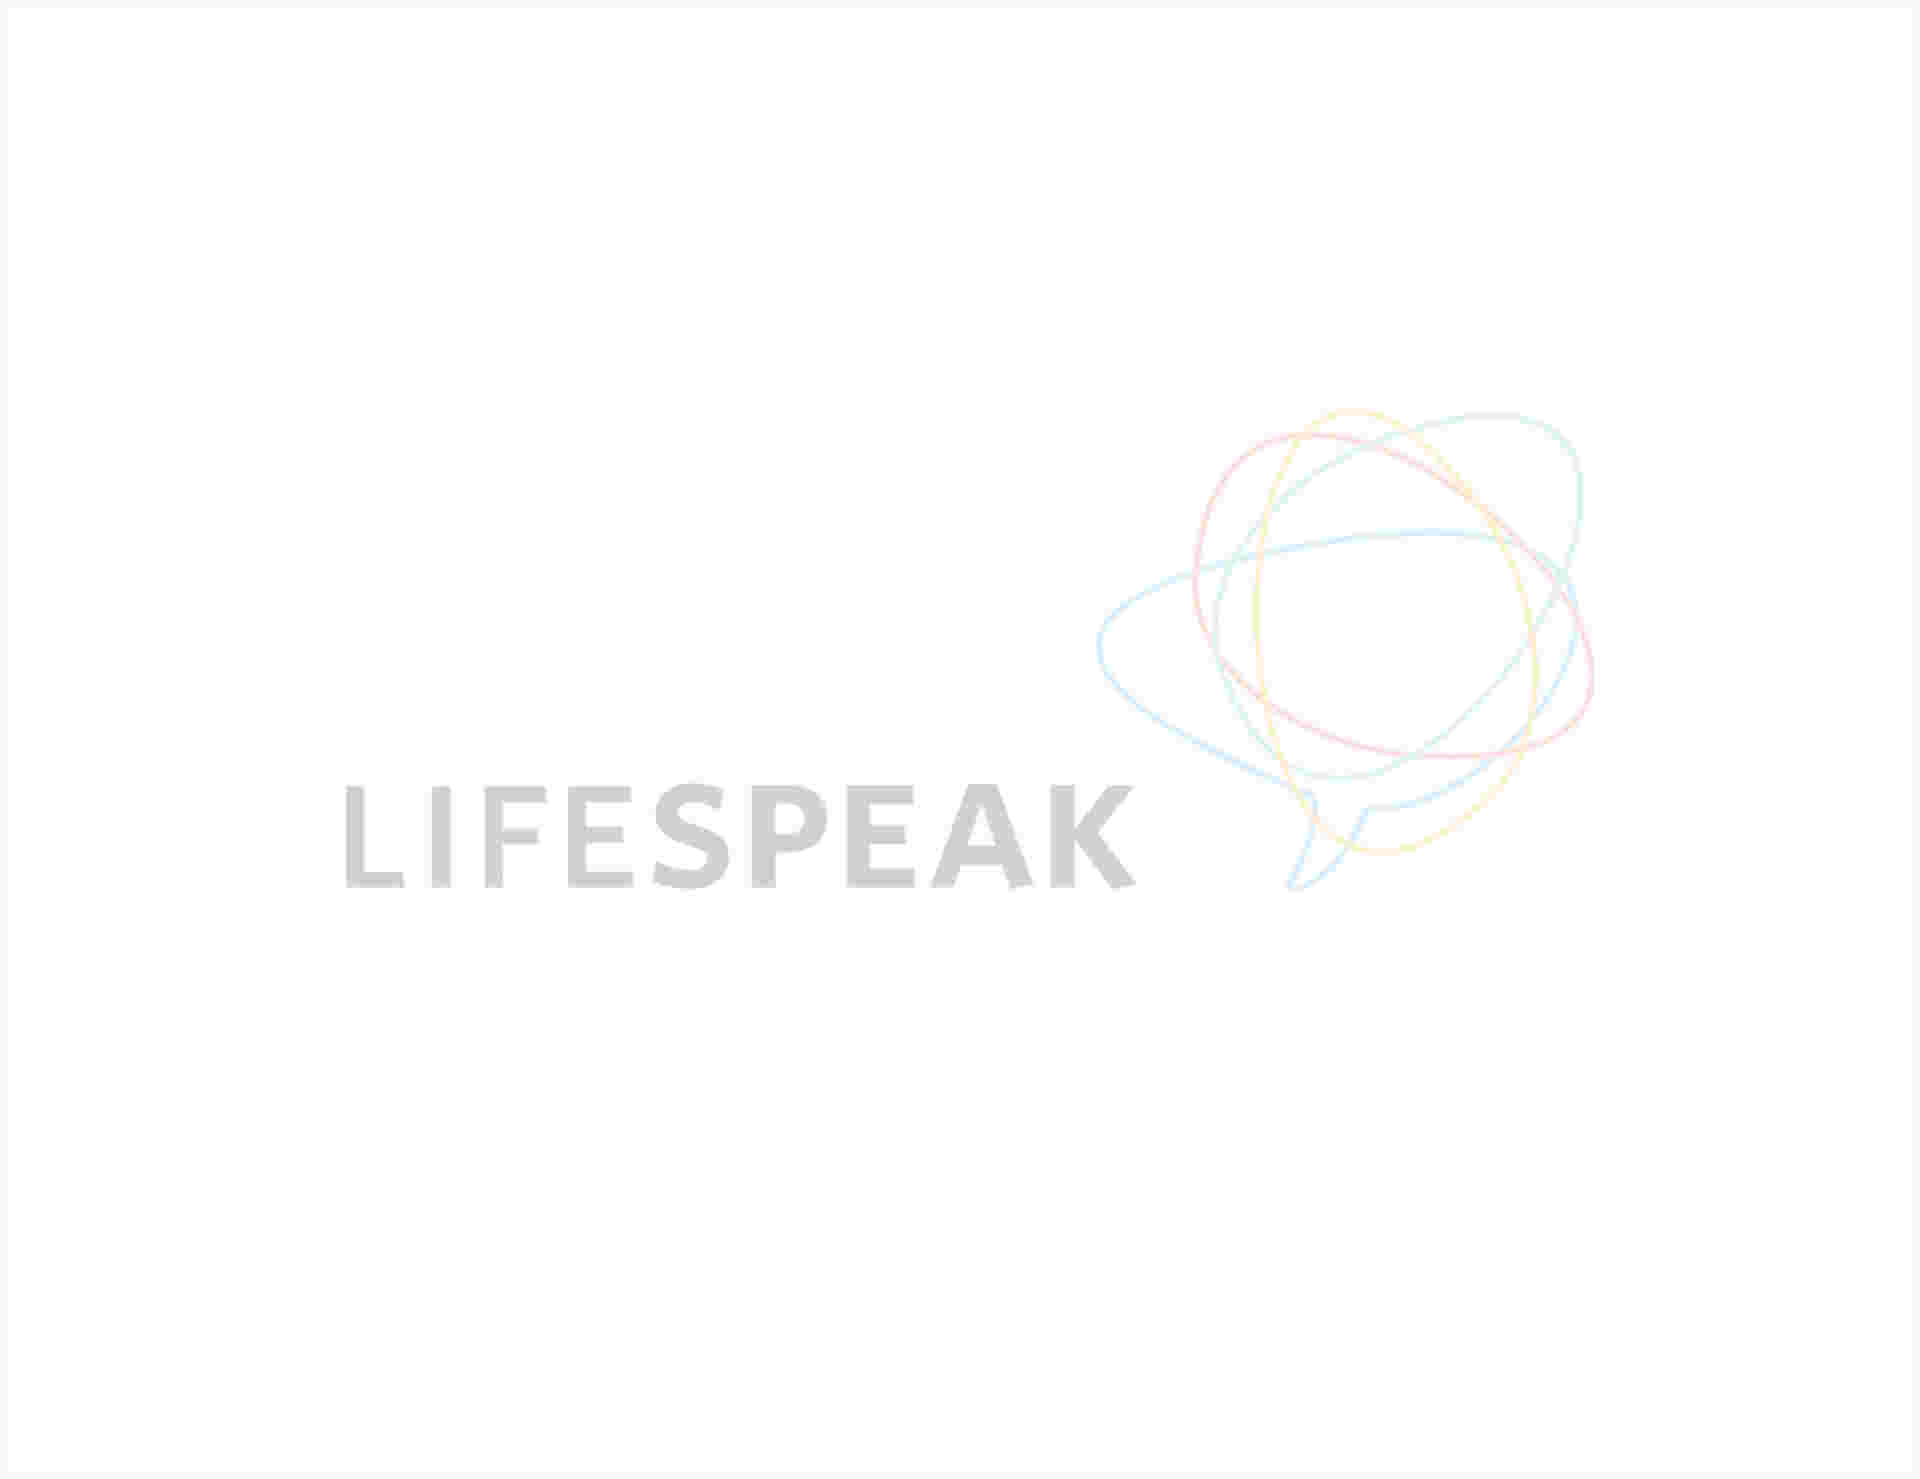 Lifespeak - lifespeak-3-6-1